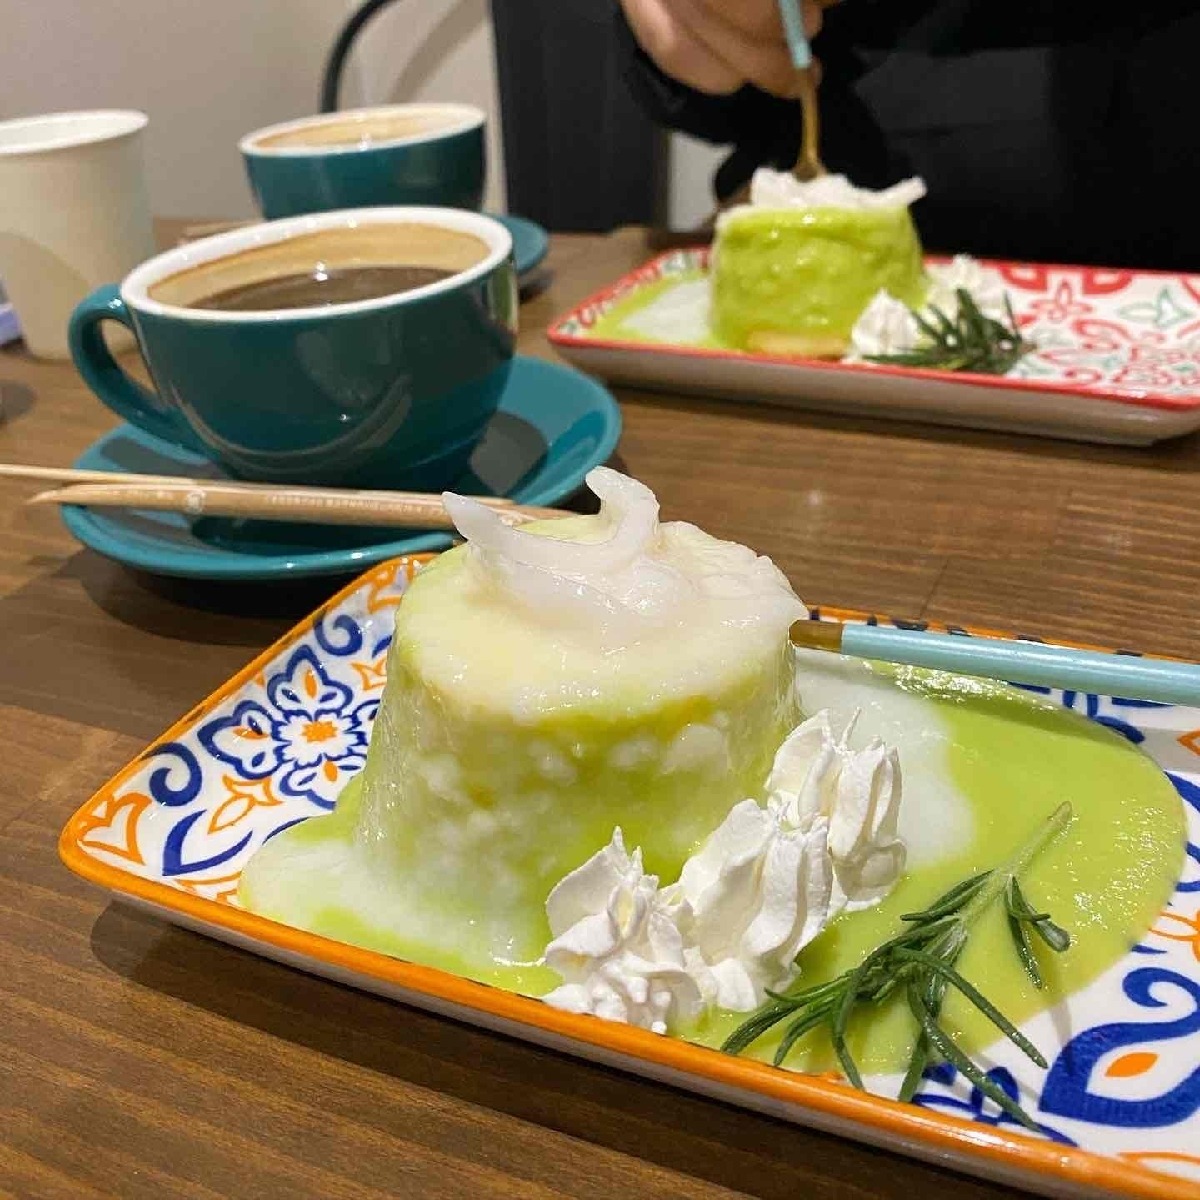 【東京/品川区】タイカフェでいただく緑色の“フォイトーン”ケーキのお味はいかに？